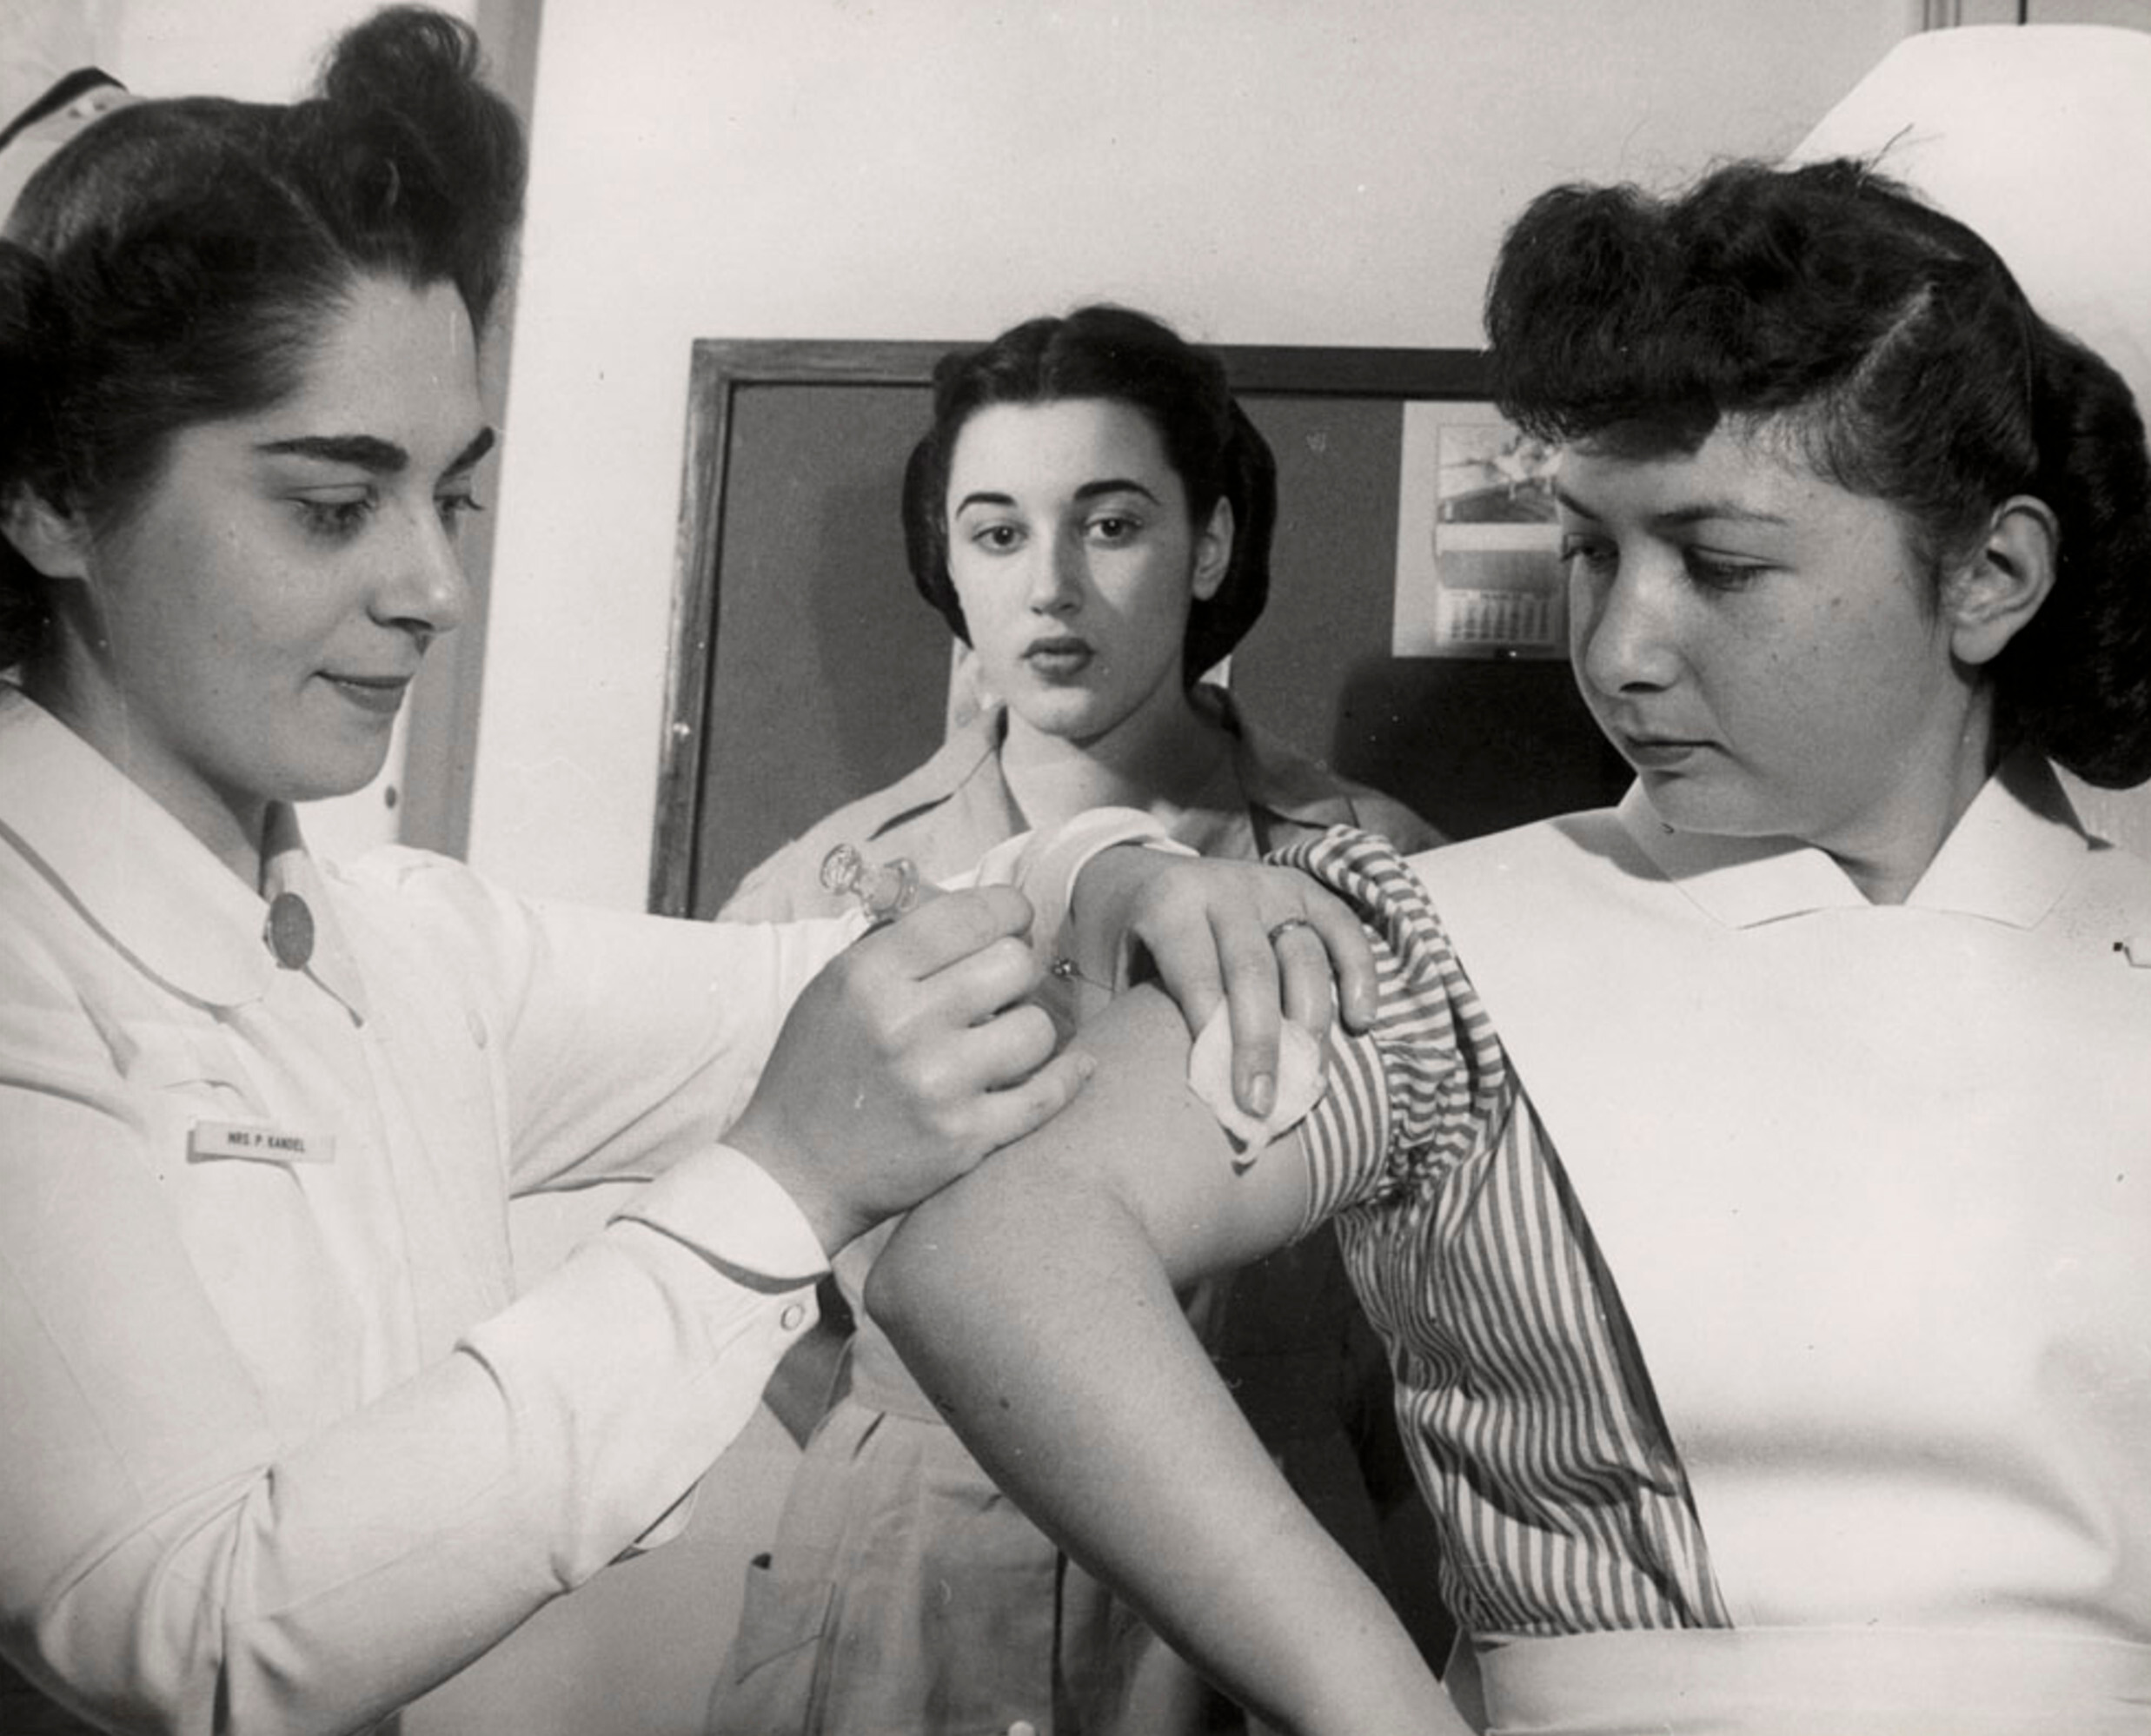 Студенты-медсестры отрабатывают свои навыки, делая друг другу инъекции, Еврейская больничная школа медсестер, Краун-Хайтс, Бруклин, Нью-Йорк, конец 1940-х начало 1950-х гг. Фотограф Роман Вишняк